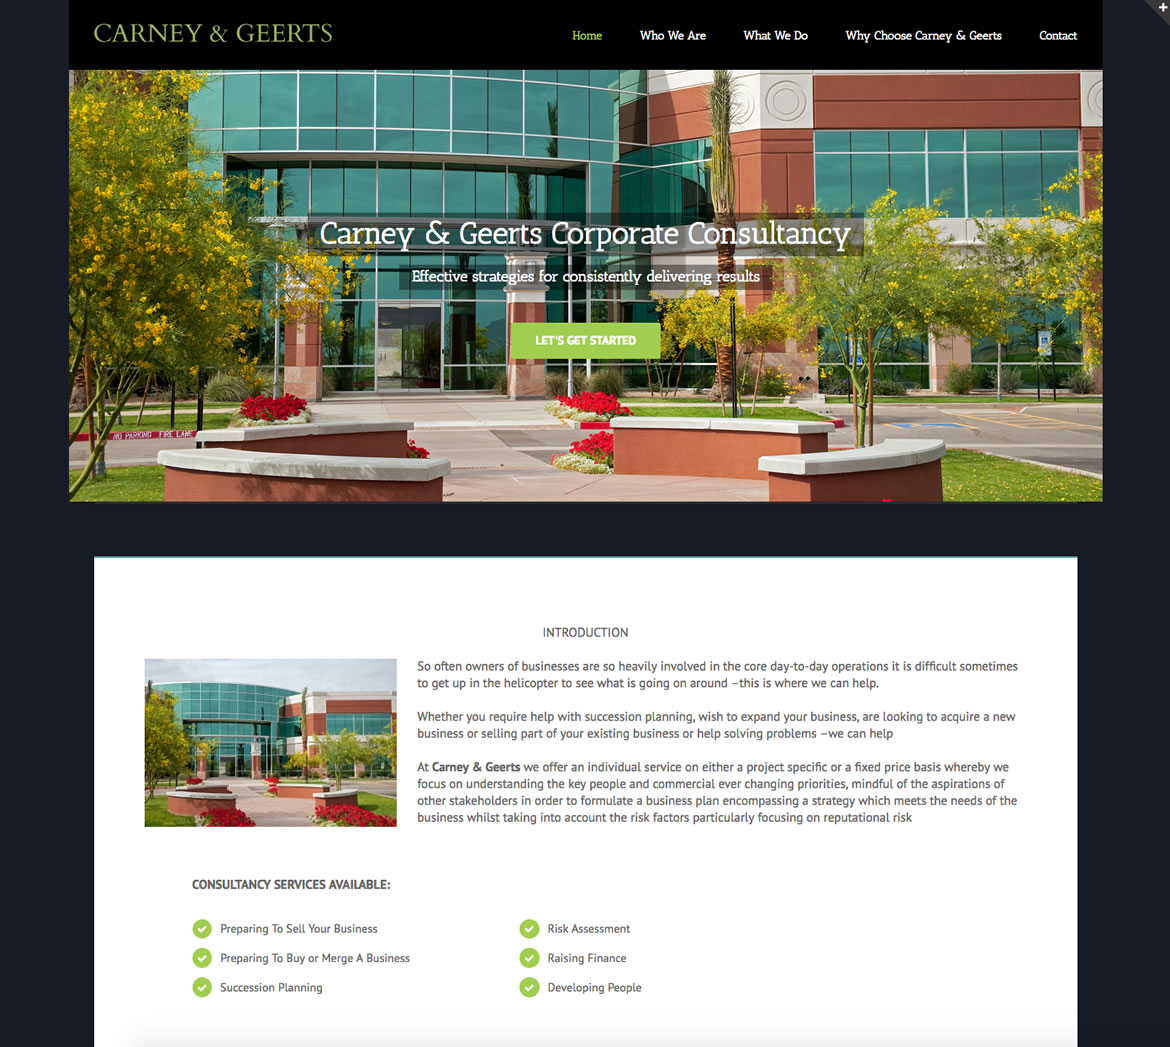 Carney & Geerts Corporate Consultancy Website Development Project